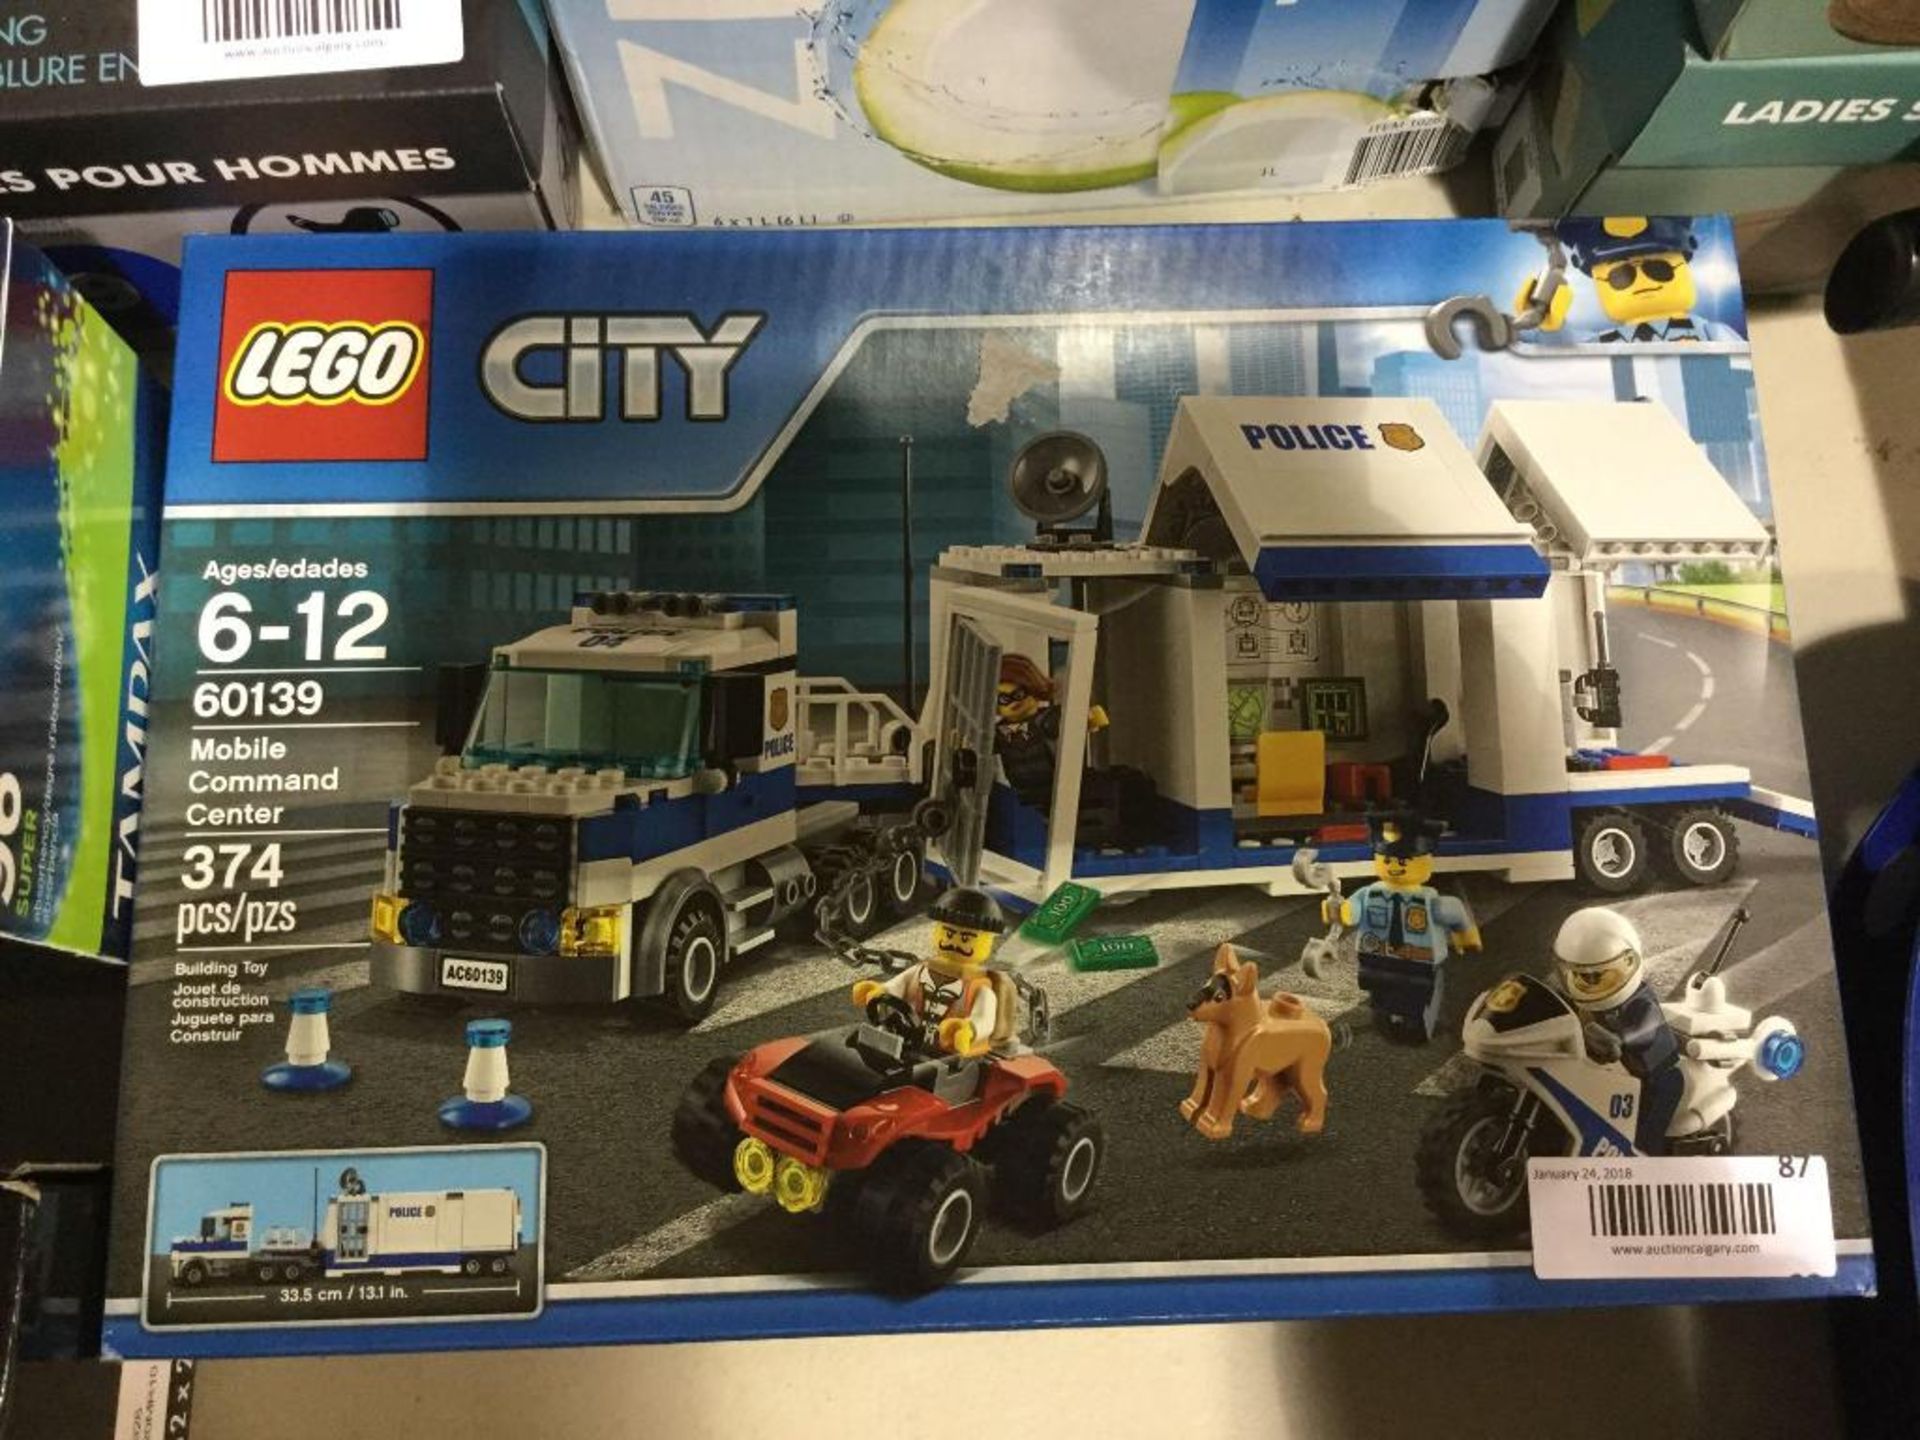 Lego City - 374 pcs - Mobile Command Center